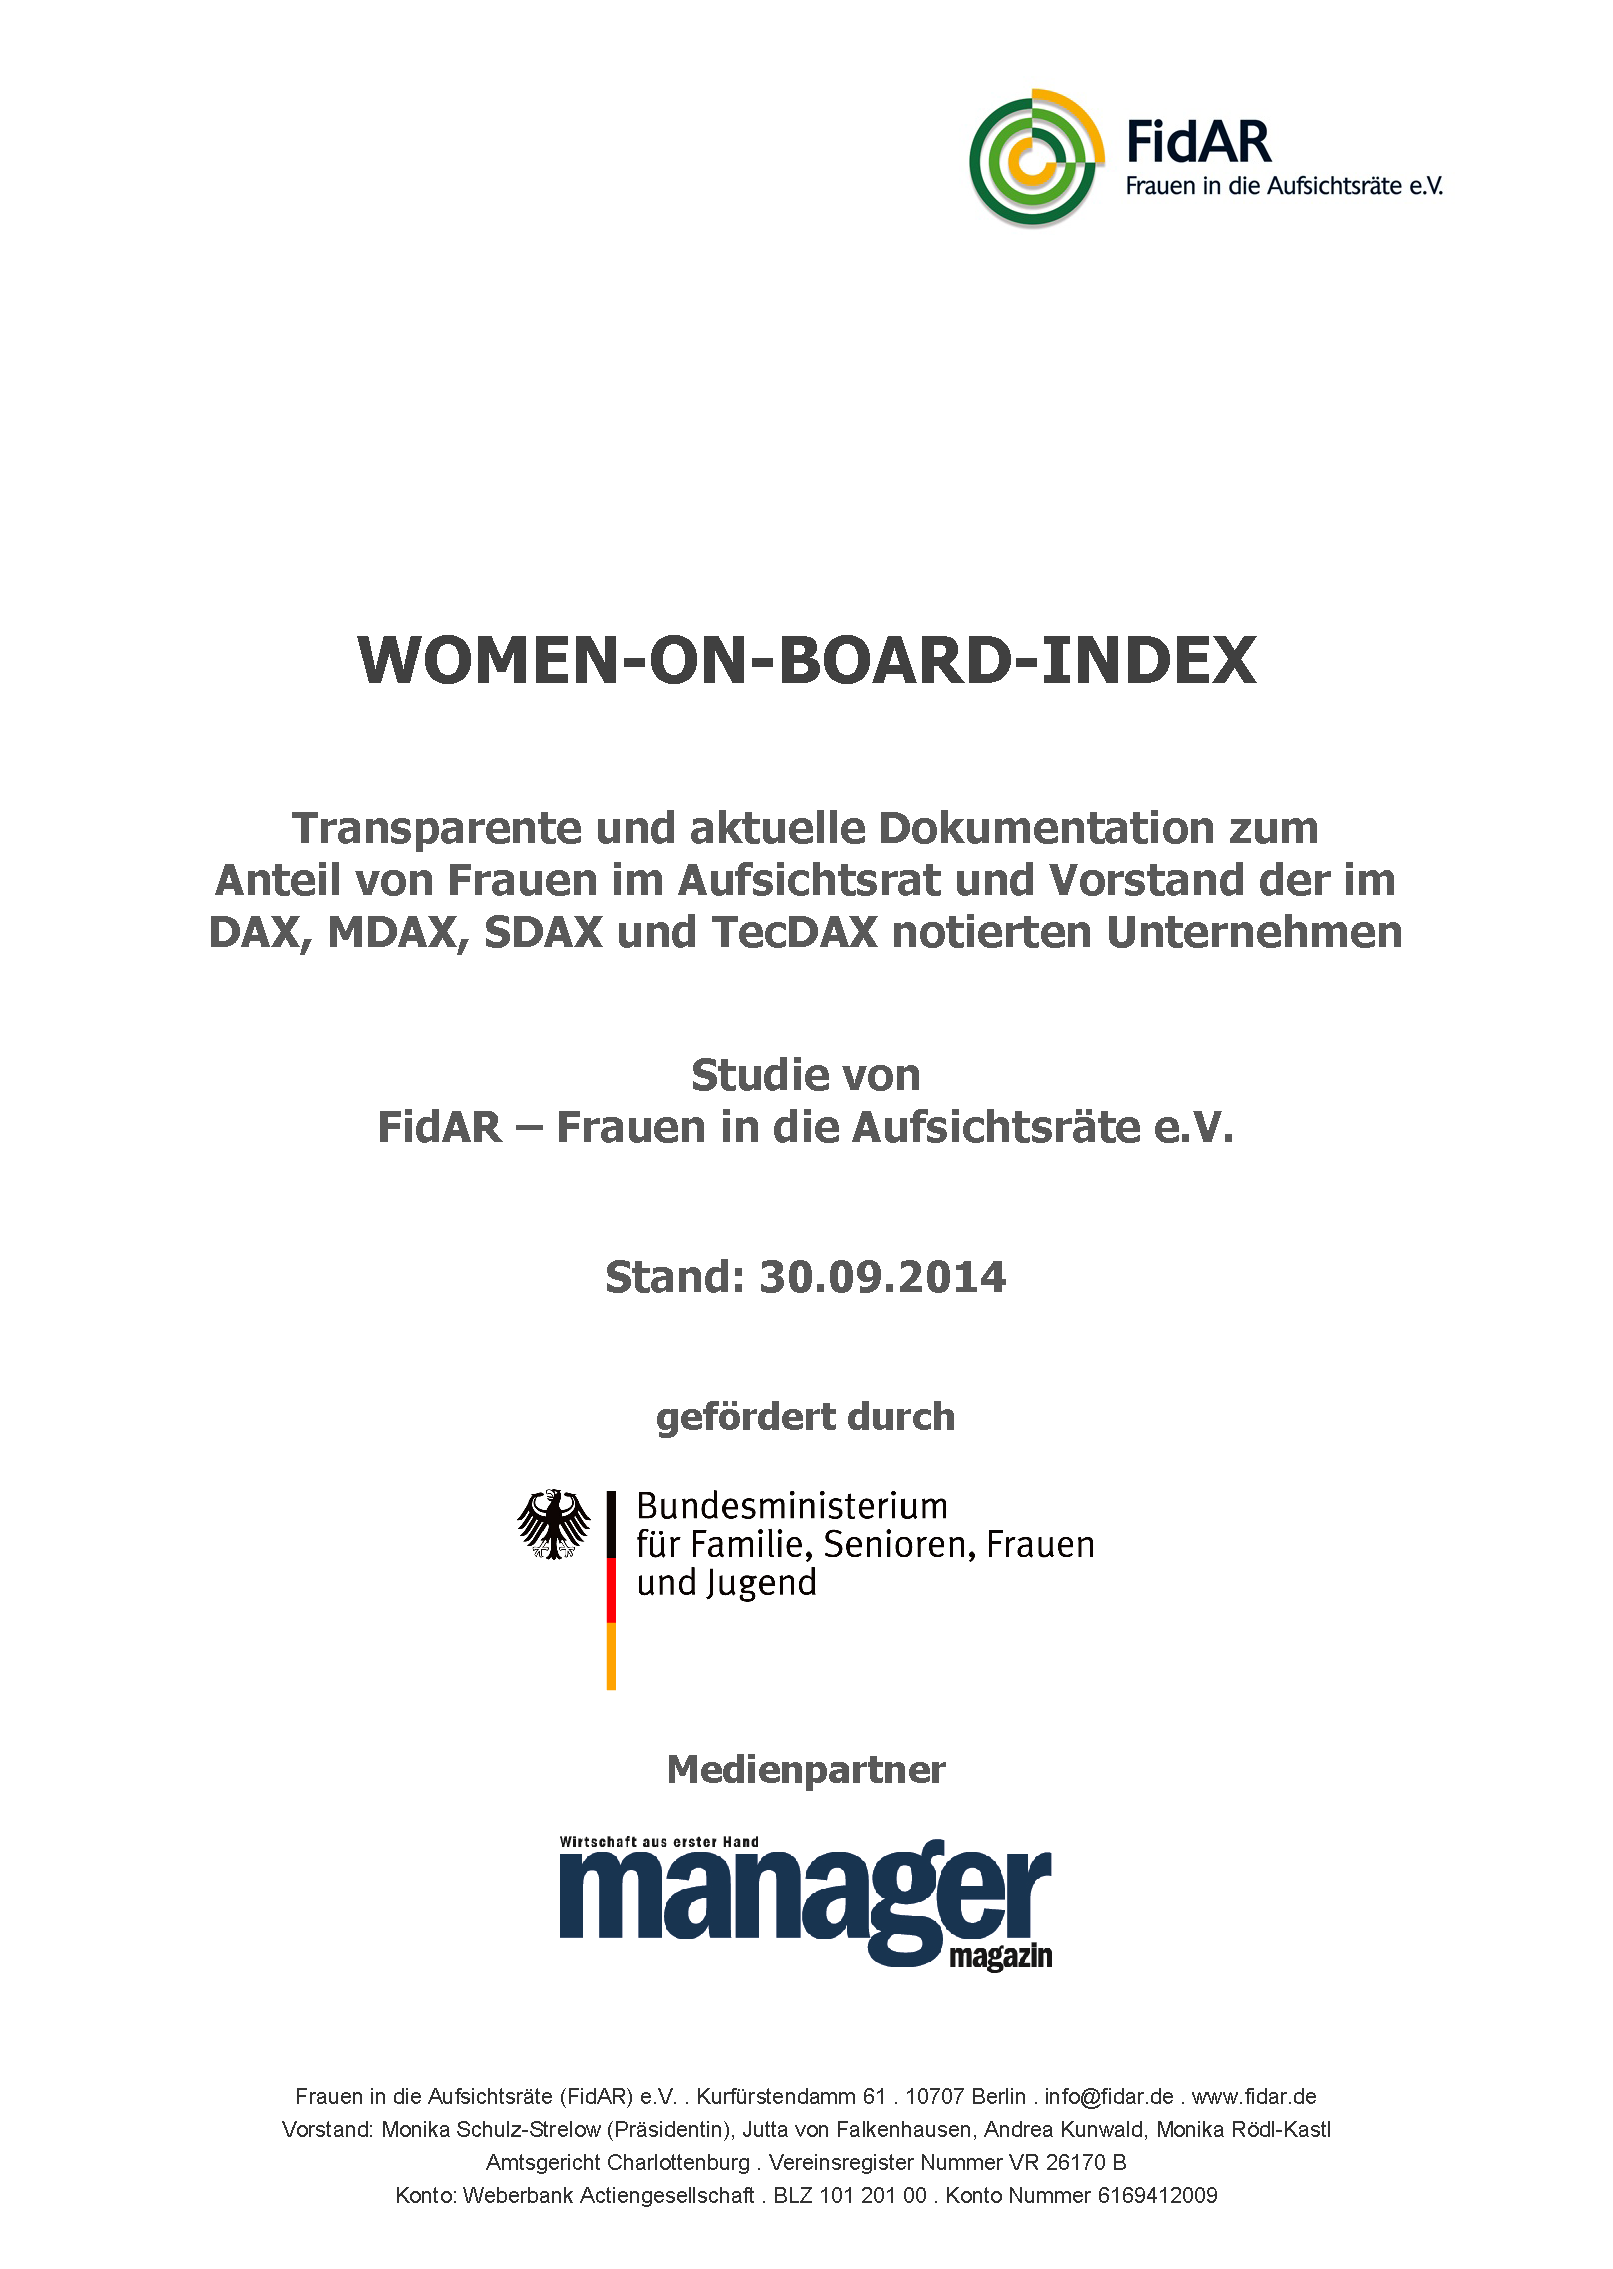 WoB-Index 160 2014-3